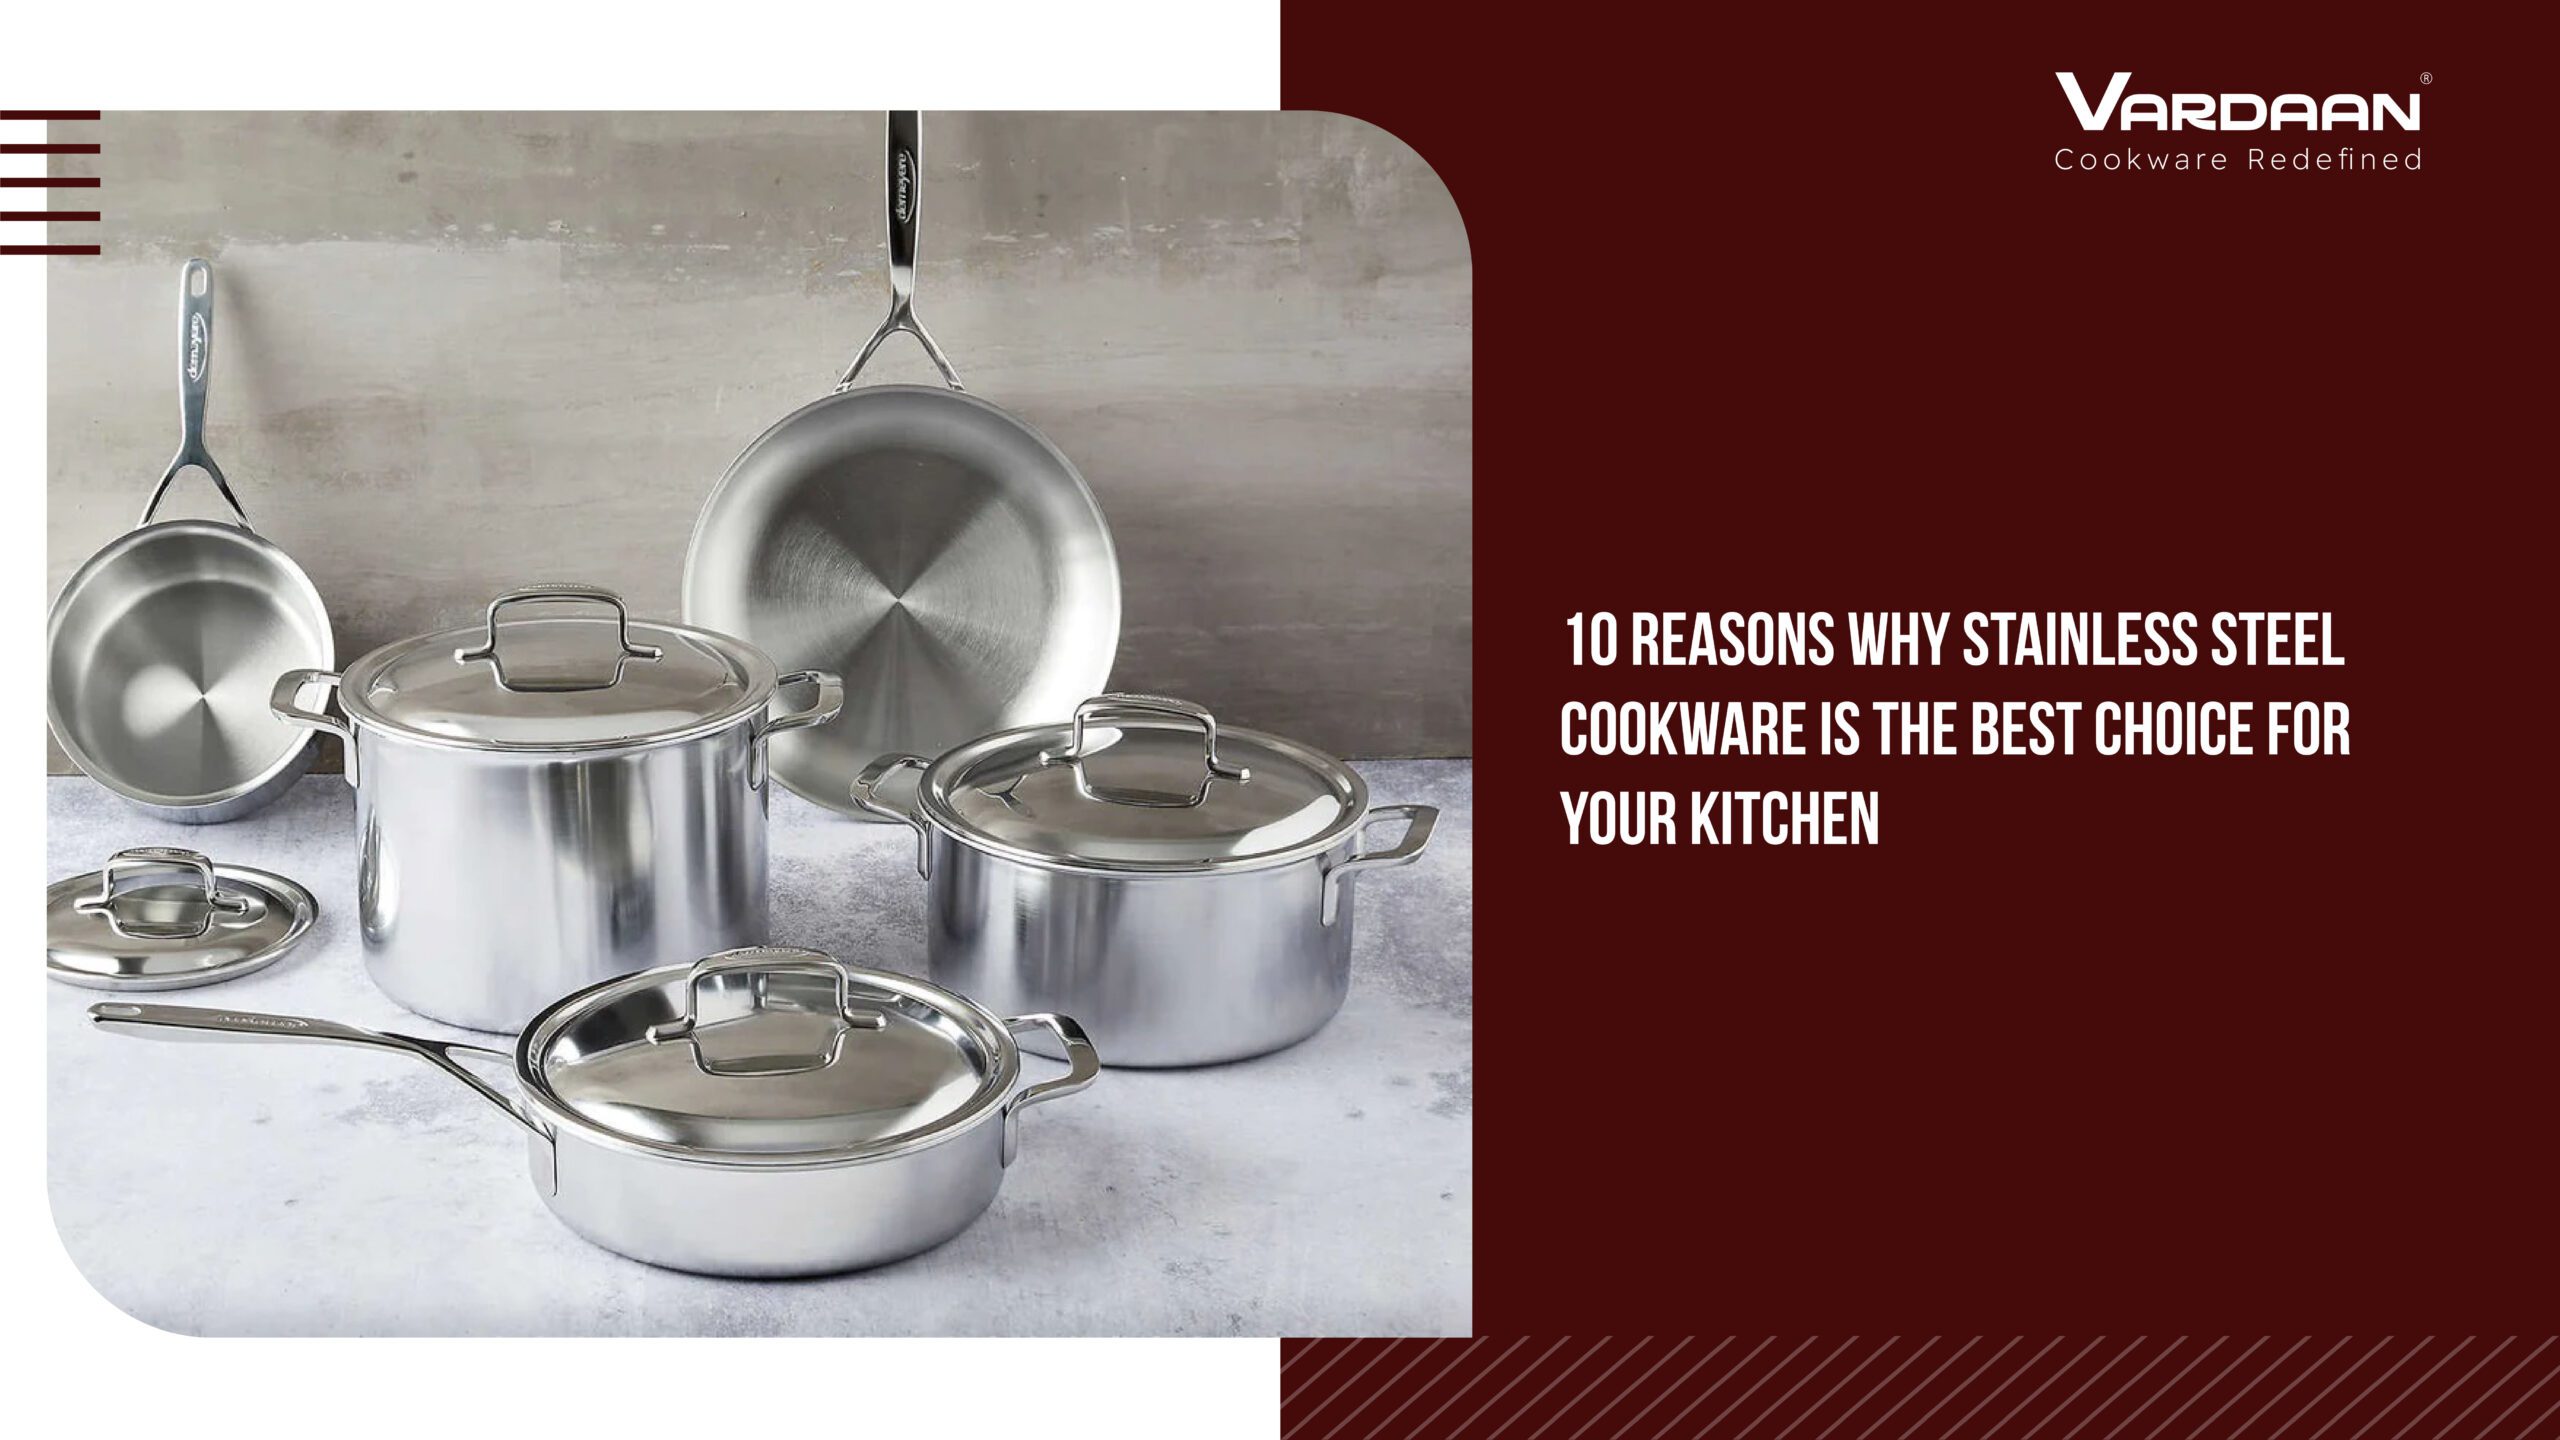 Indian stainless steel cookware - Vardaan Cookware